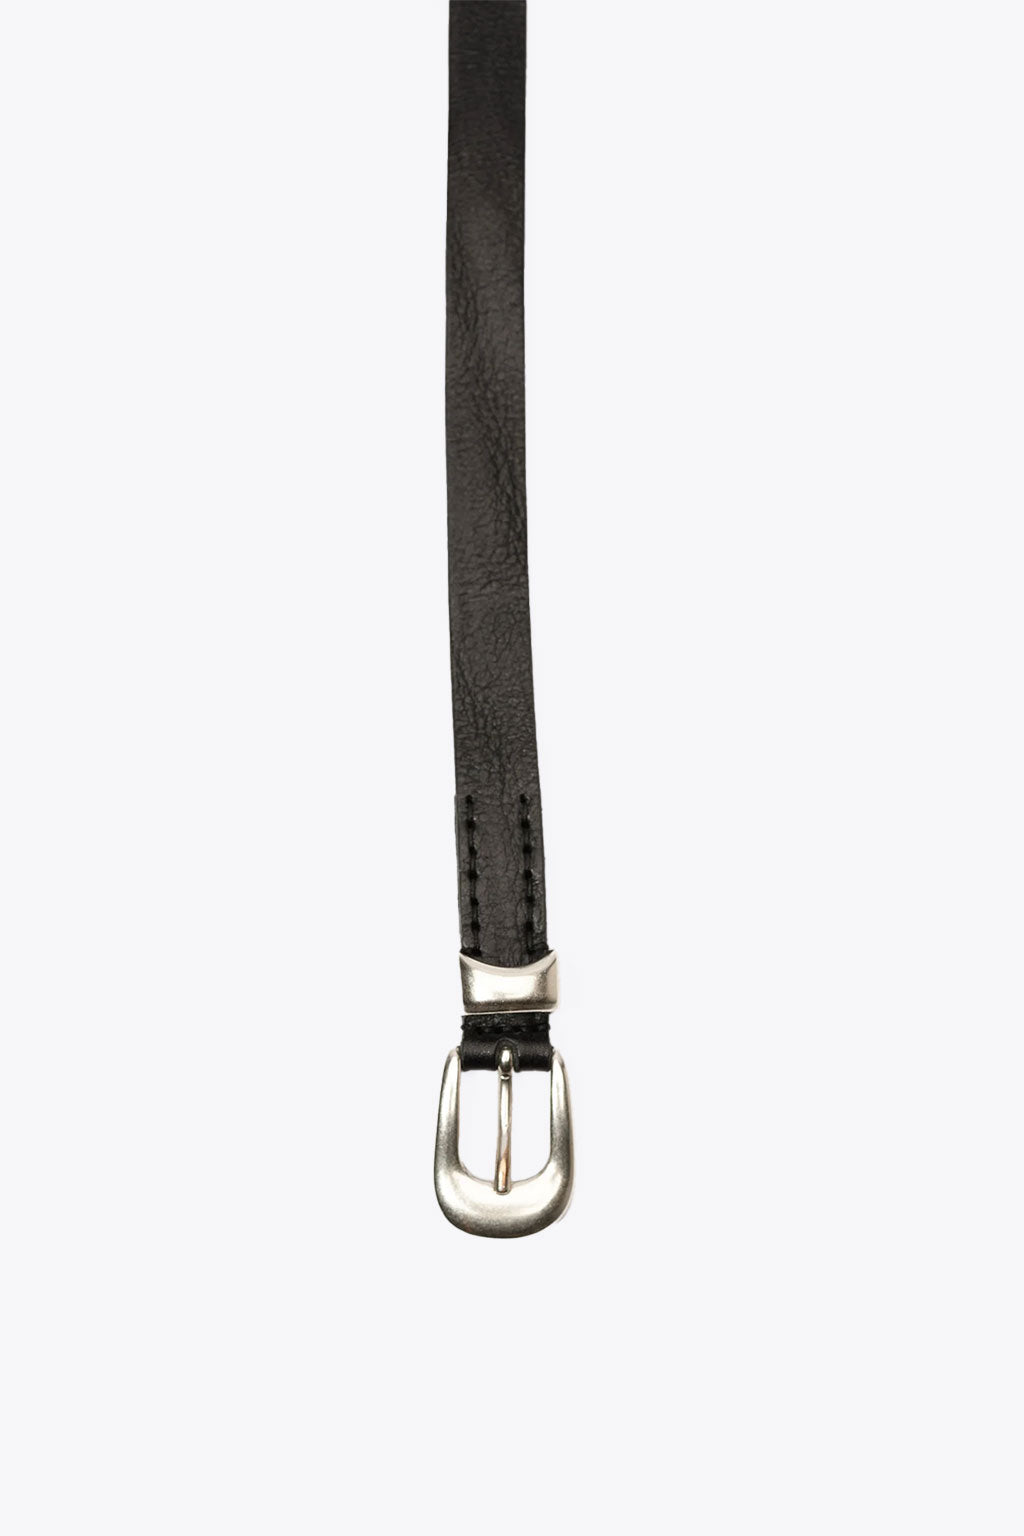 alt-image__Black-leather-belt---2-cm-belt-